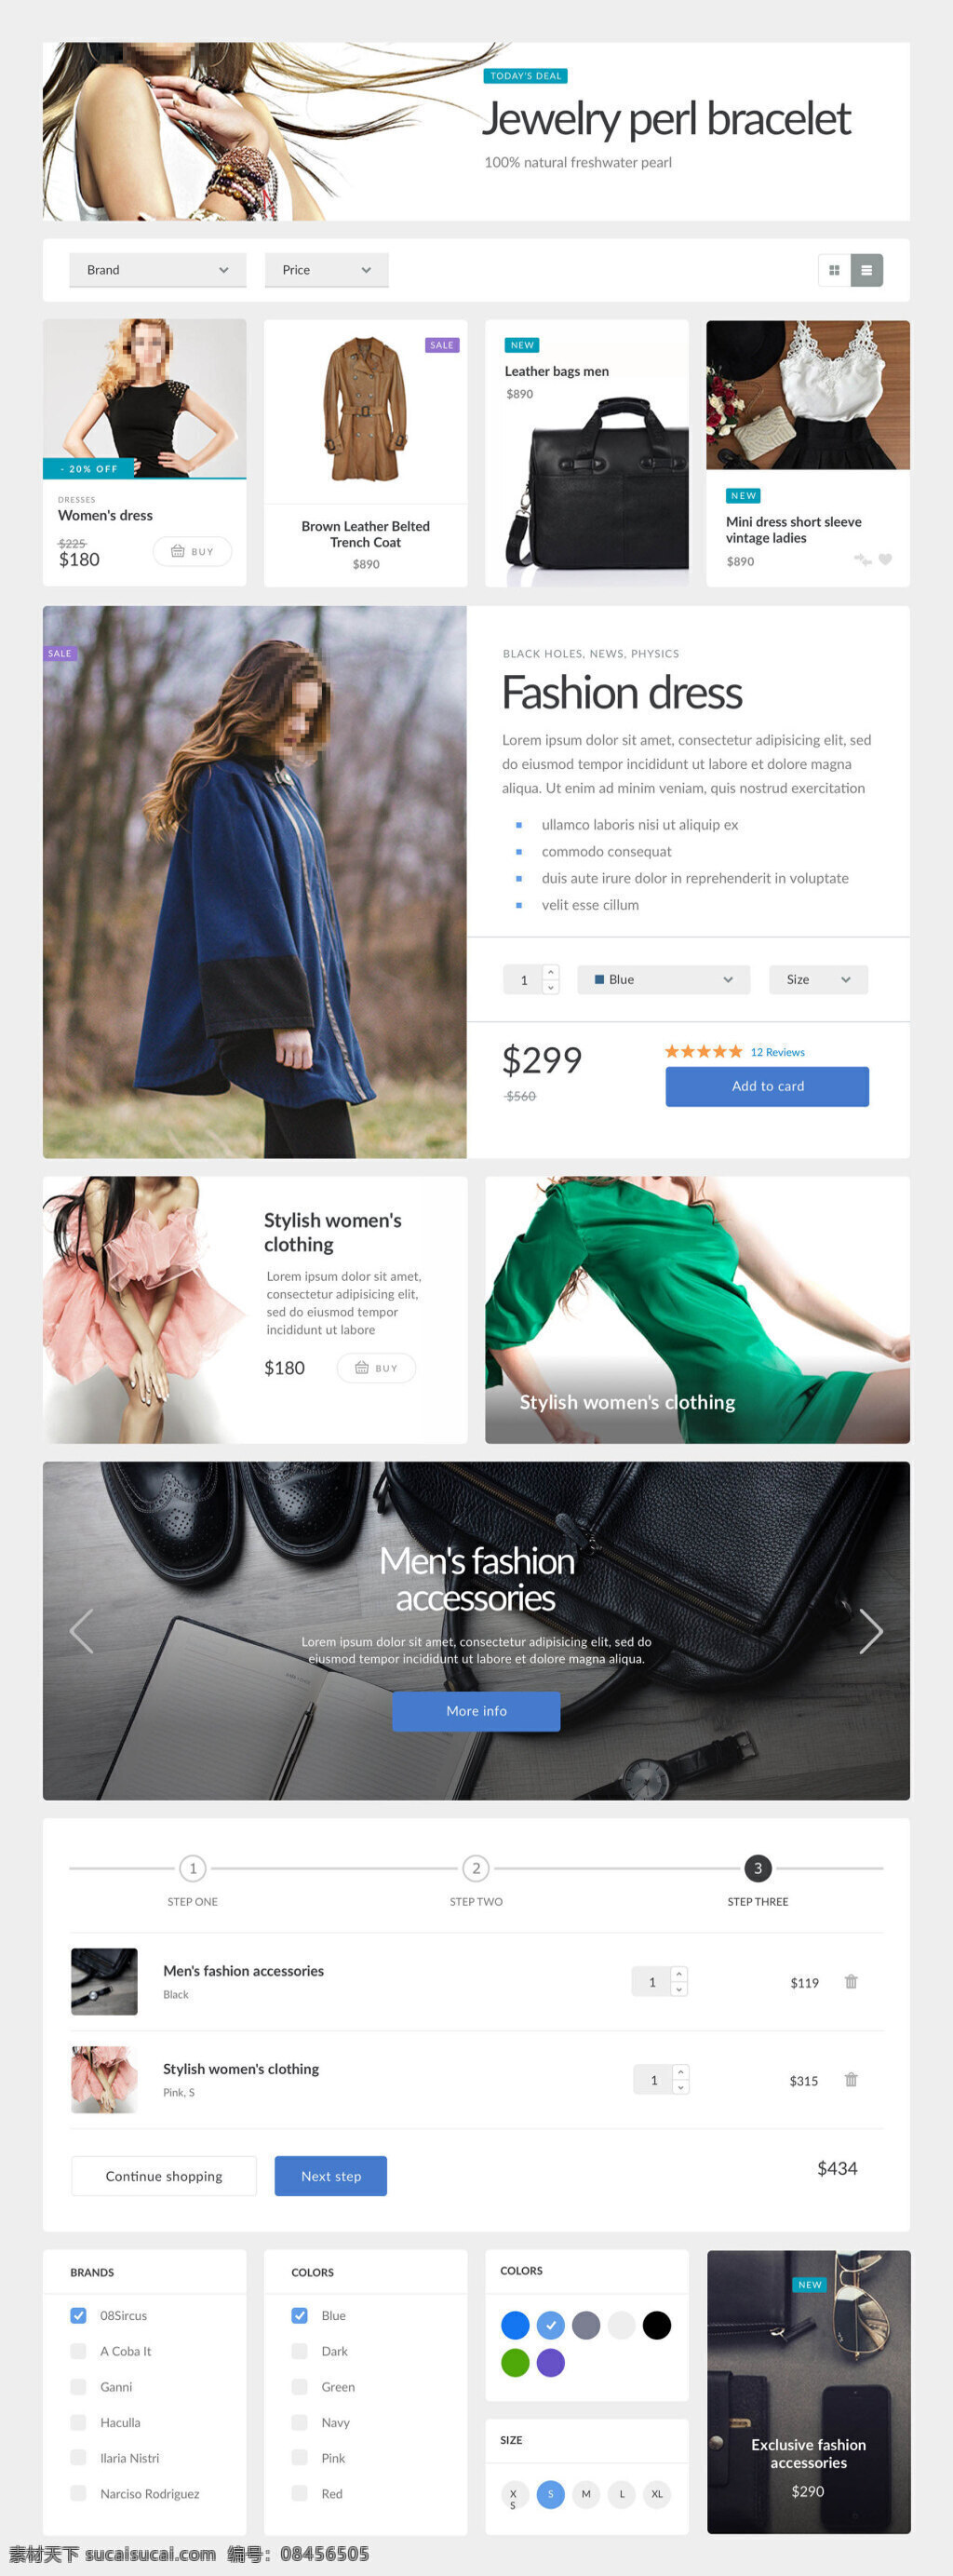 电商 网页 元素 sketch 衣服 鞋子 包 时尚 格式